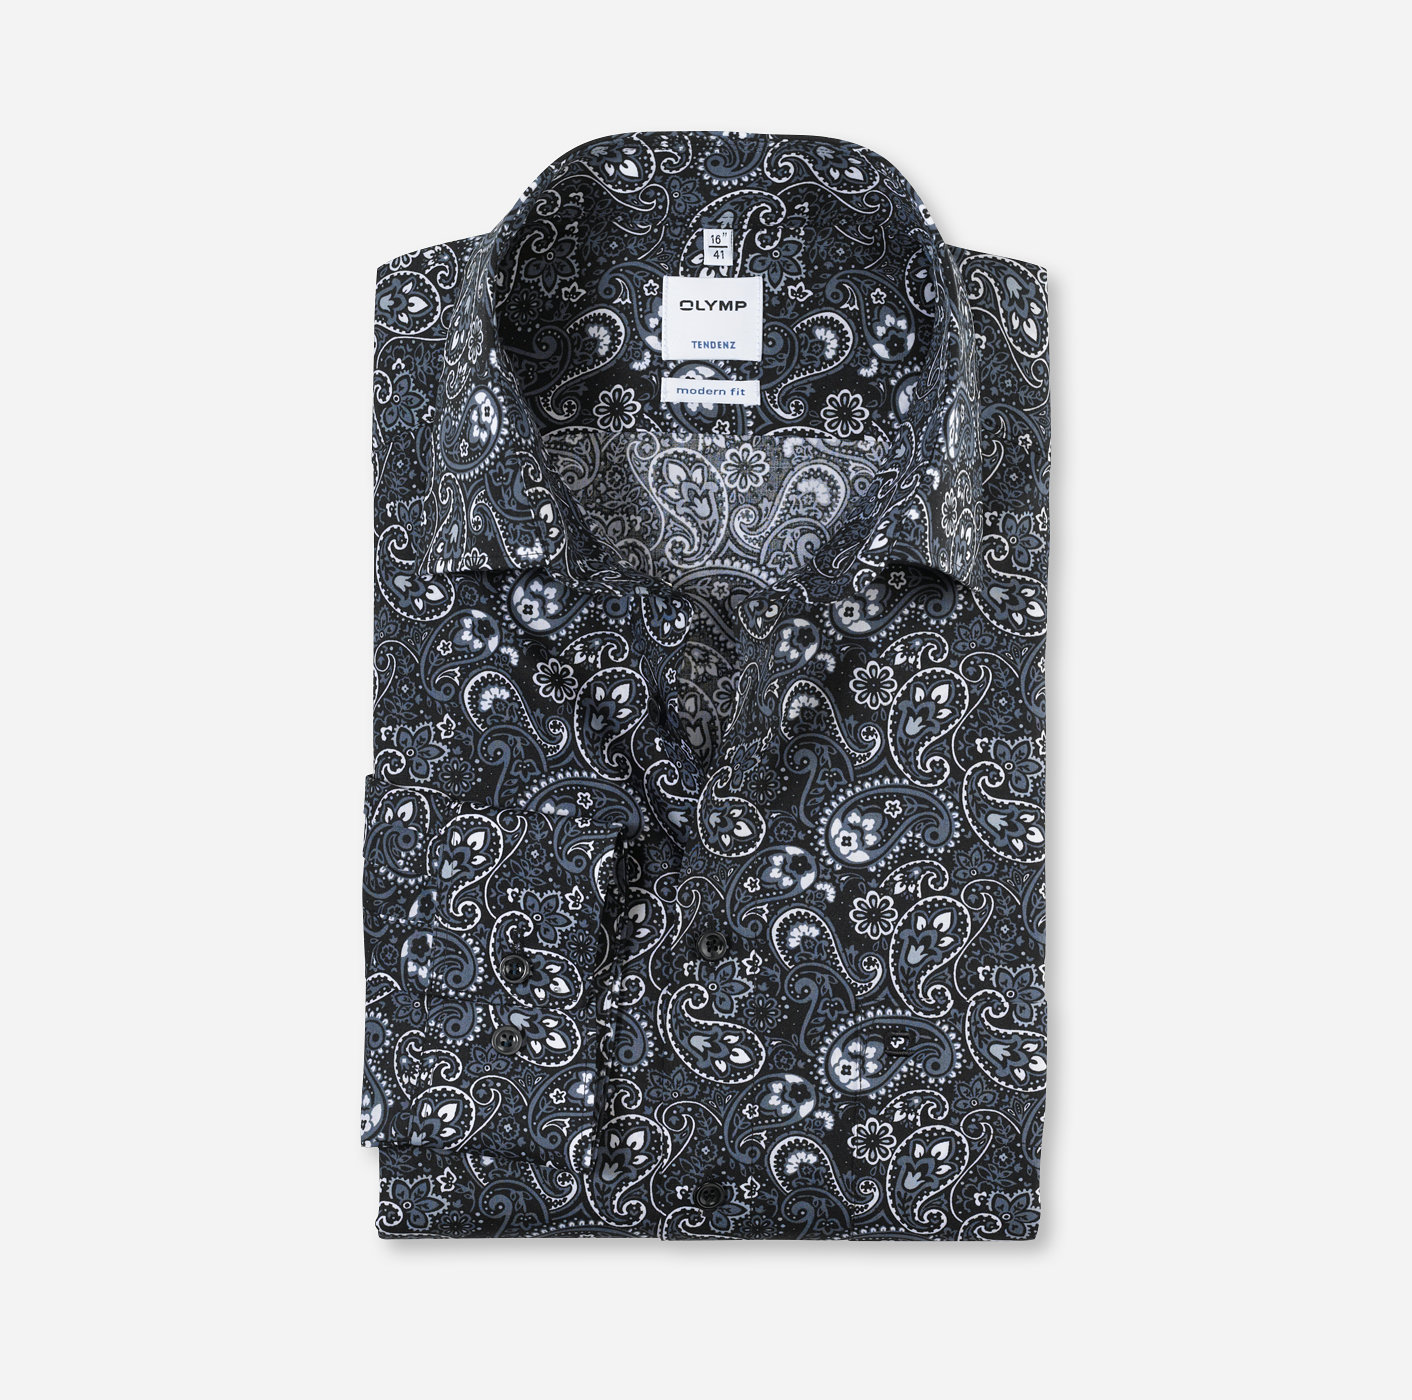 OLYMP Tendenz, modern fit, Business shirt, New Kent, Noir